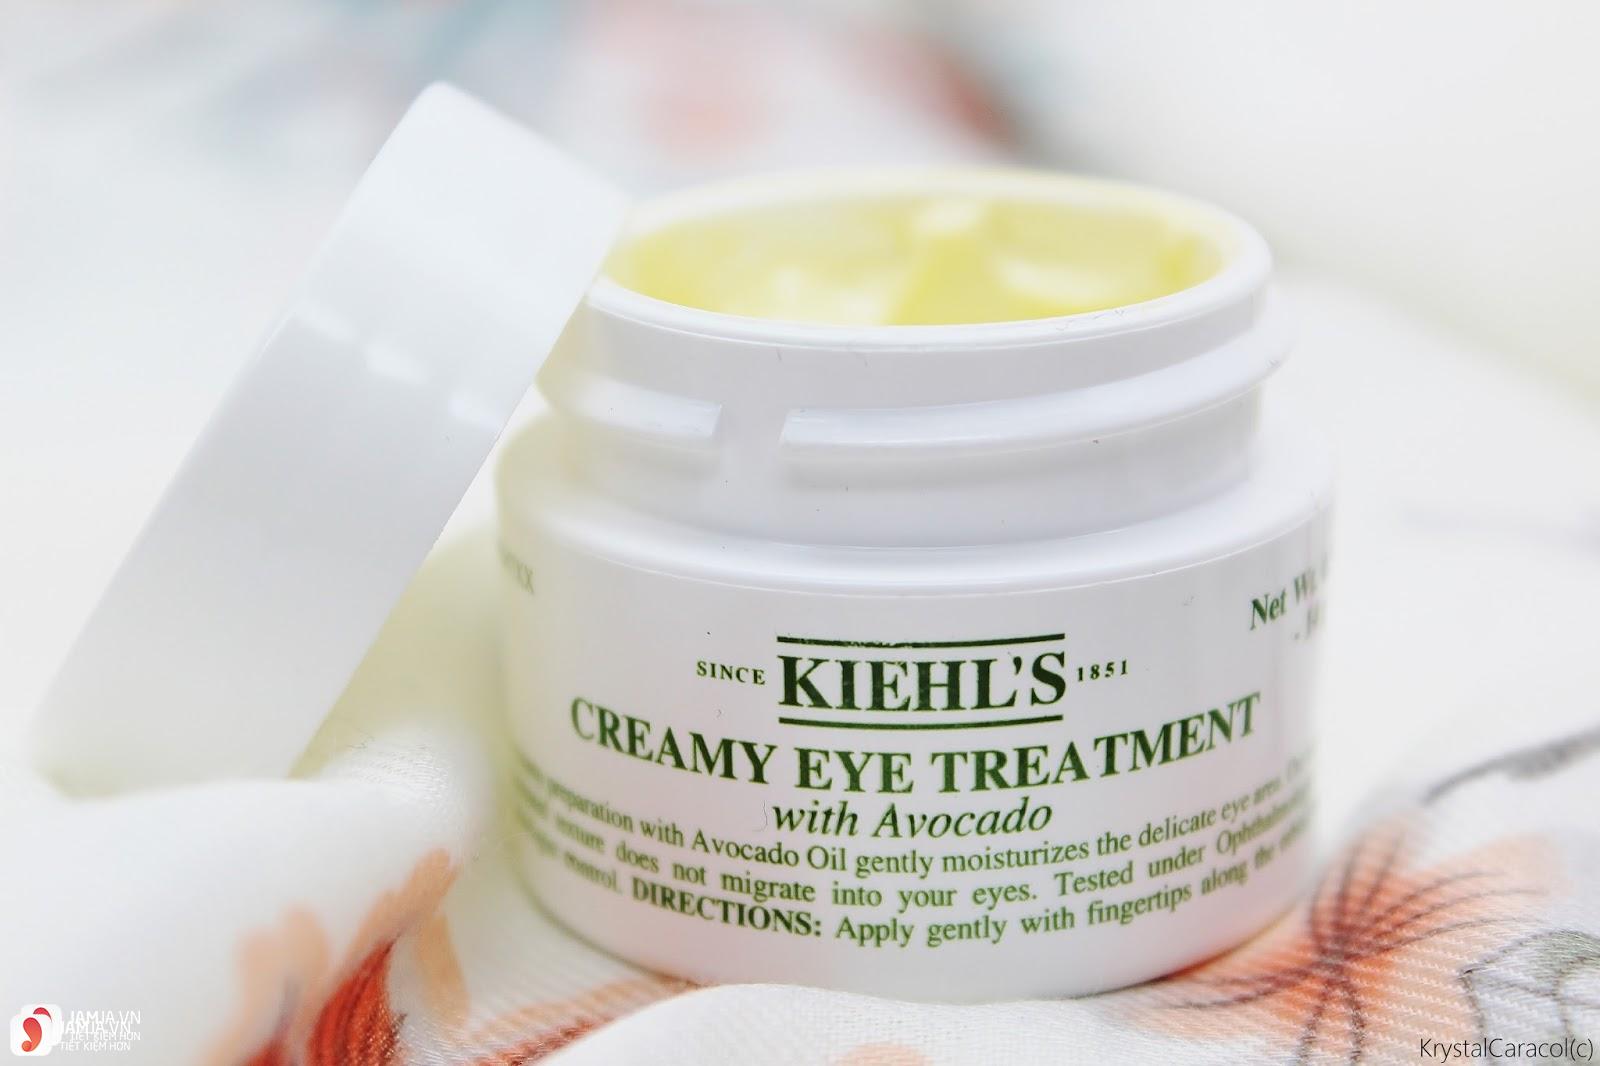 Kem mắt kiehl’s Creamy Eye Treatment with Avocado 1